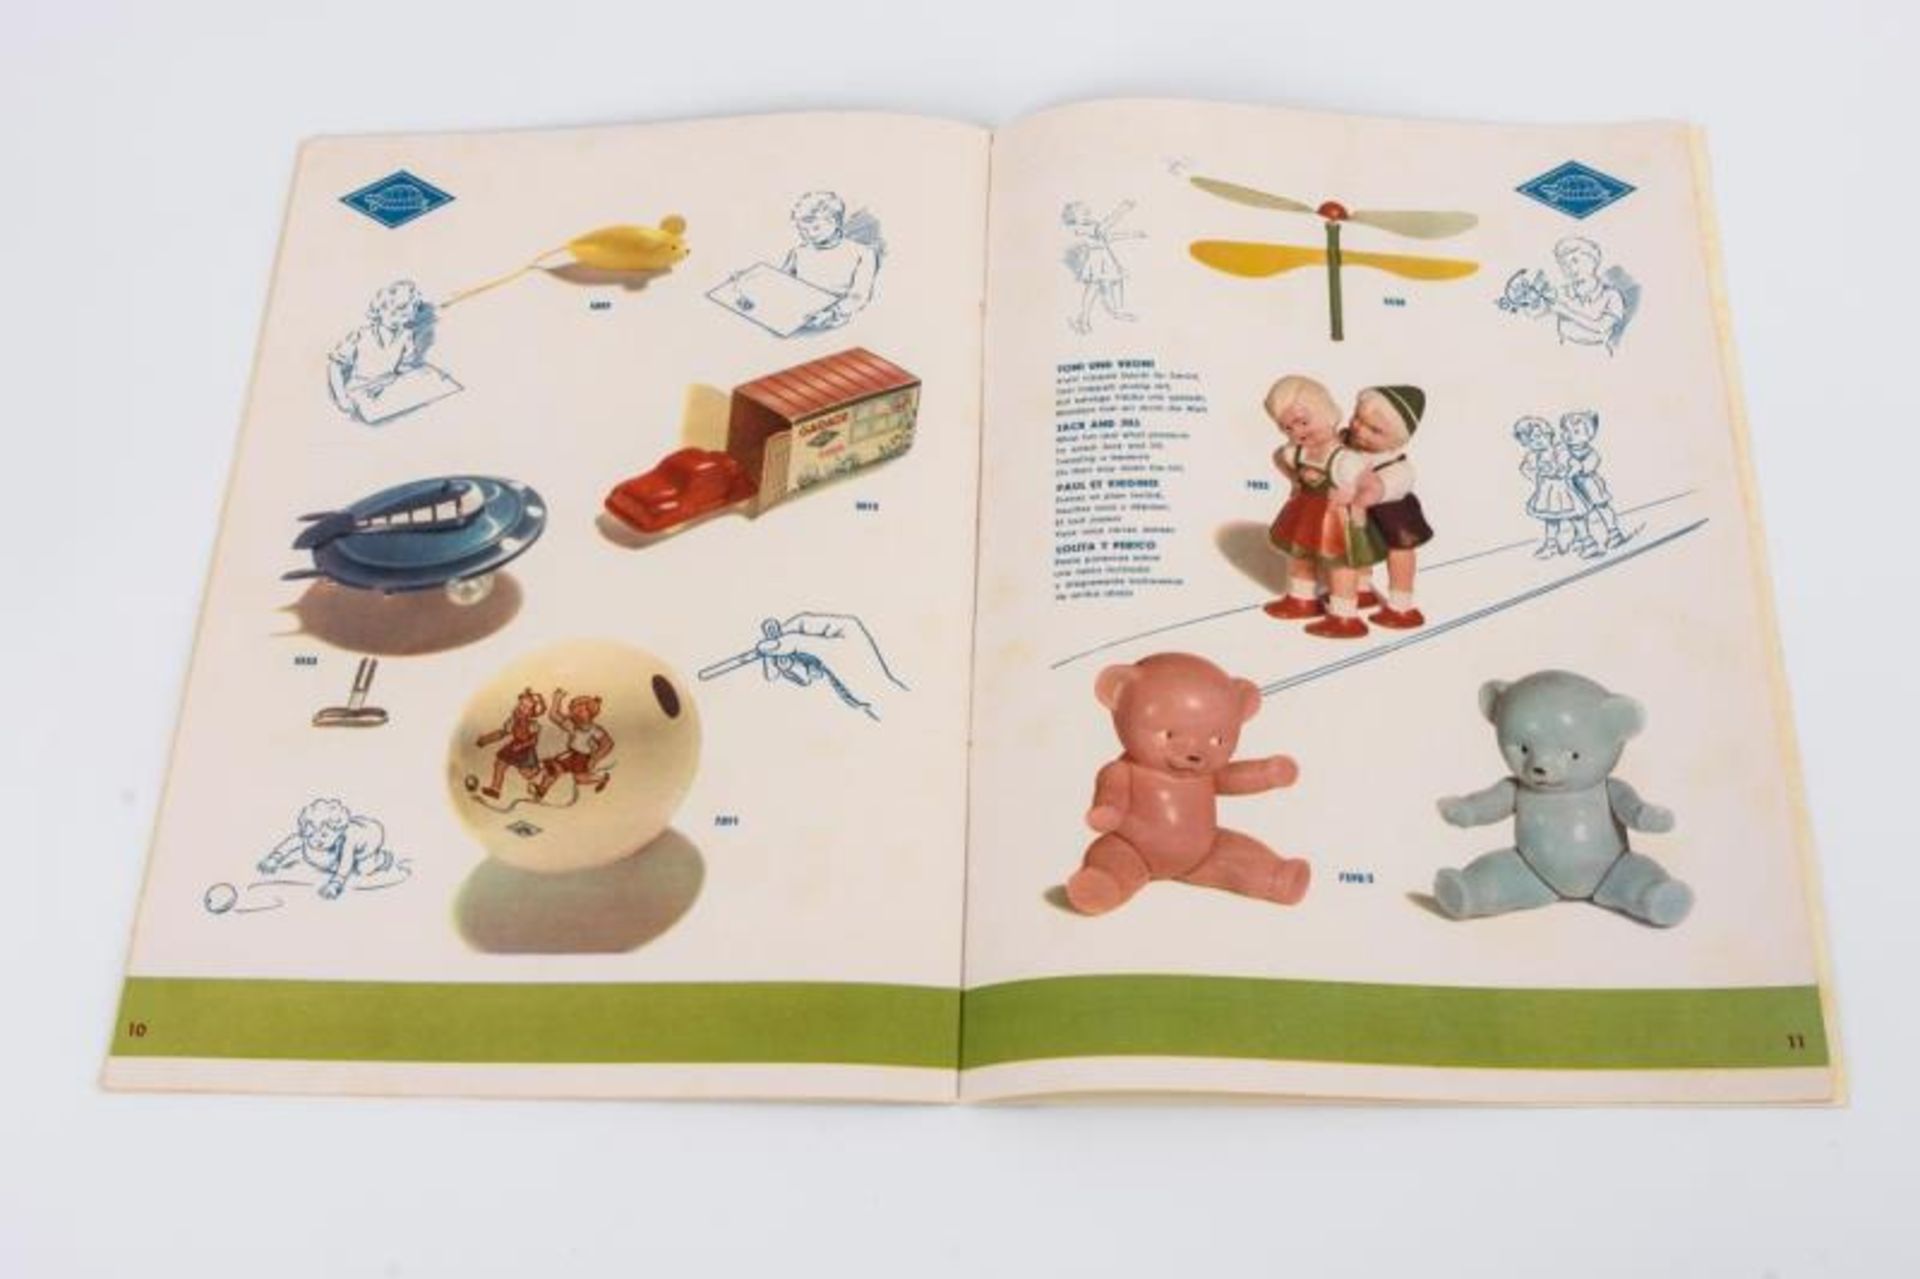 Katalog "Schildkröt-Spielzeug" - Bild 2 aus 3